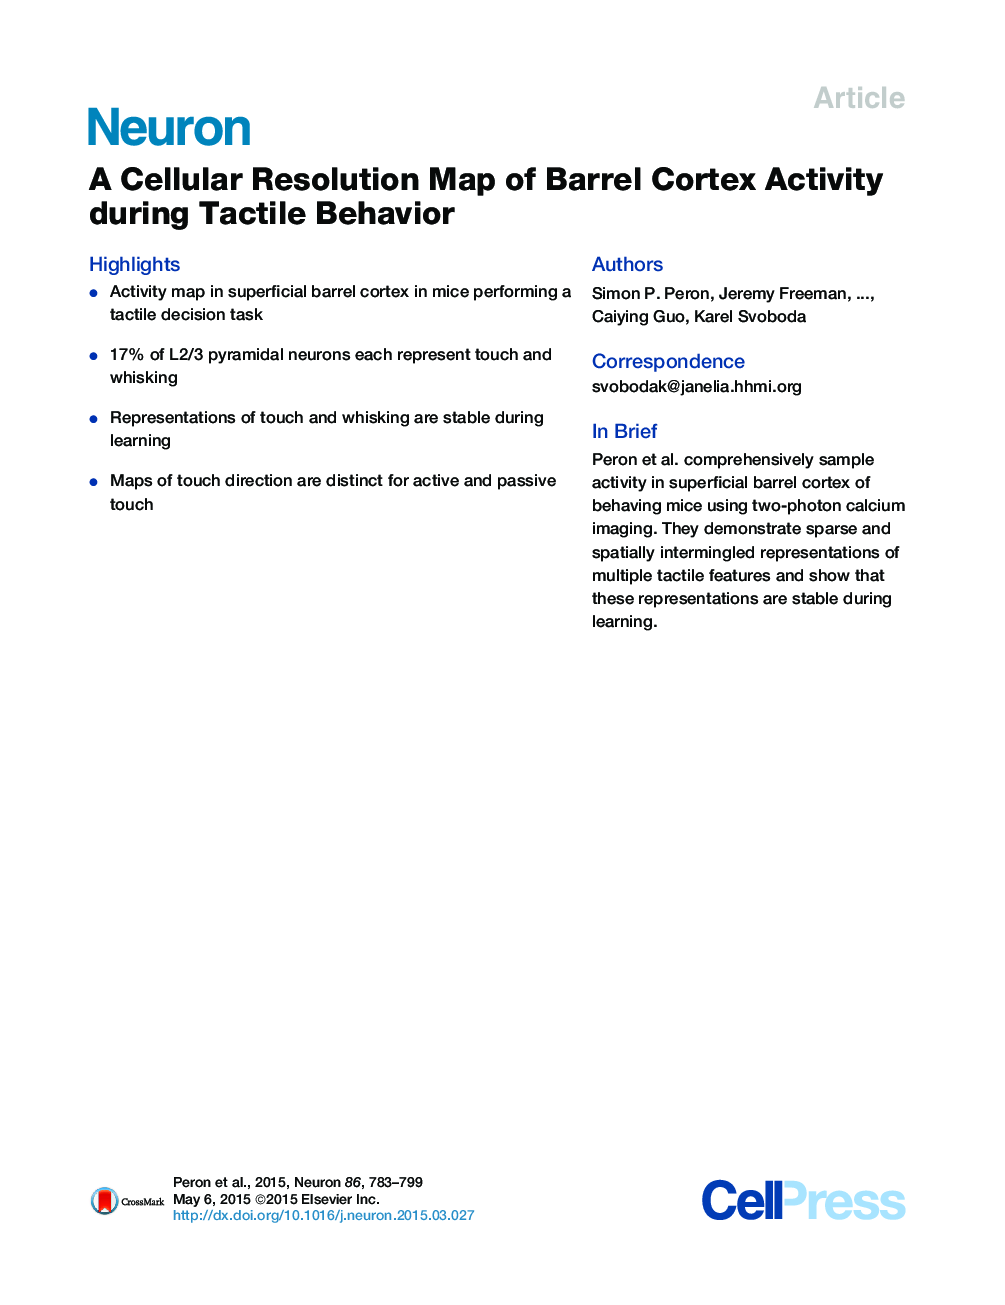 نقشه قطعنامه سلولی از فعالیت کورتکس بشکه در طی رفتار تاکتیکی 